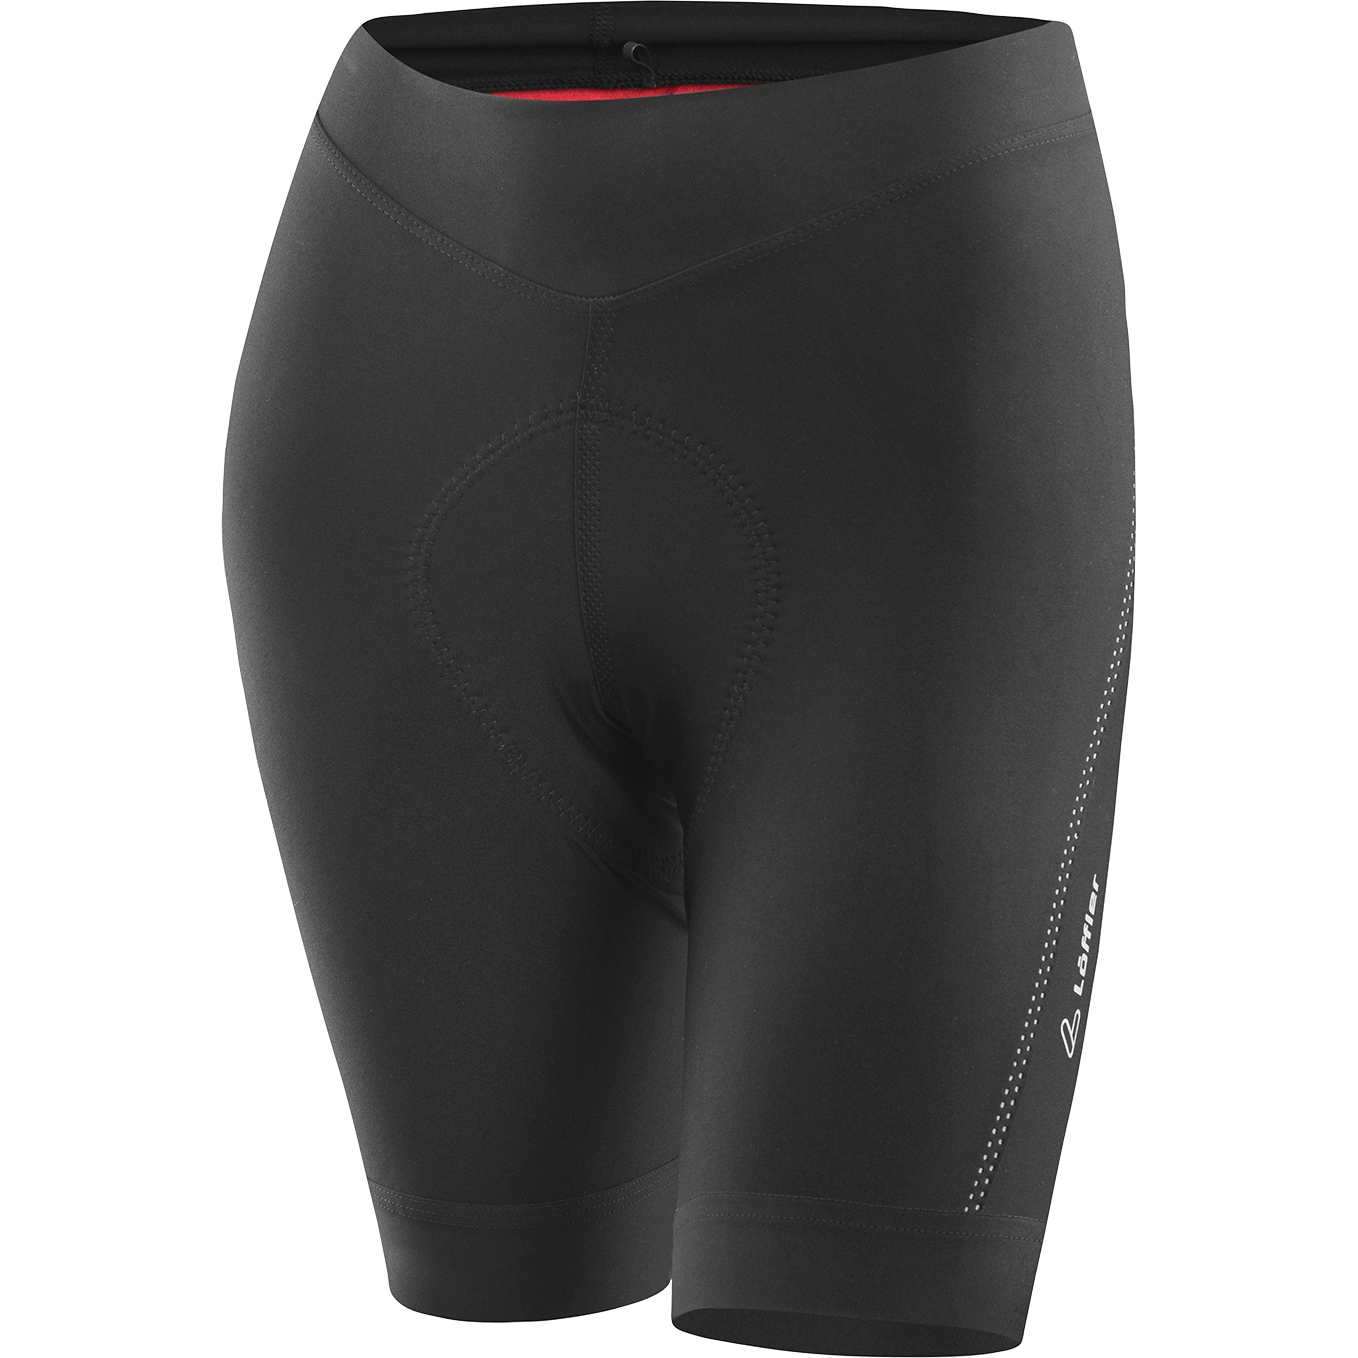 Produktbild von Löffler Hotbond RF XT Damen Bike Shorts - schwarz 990